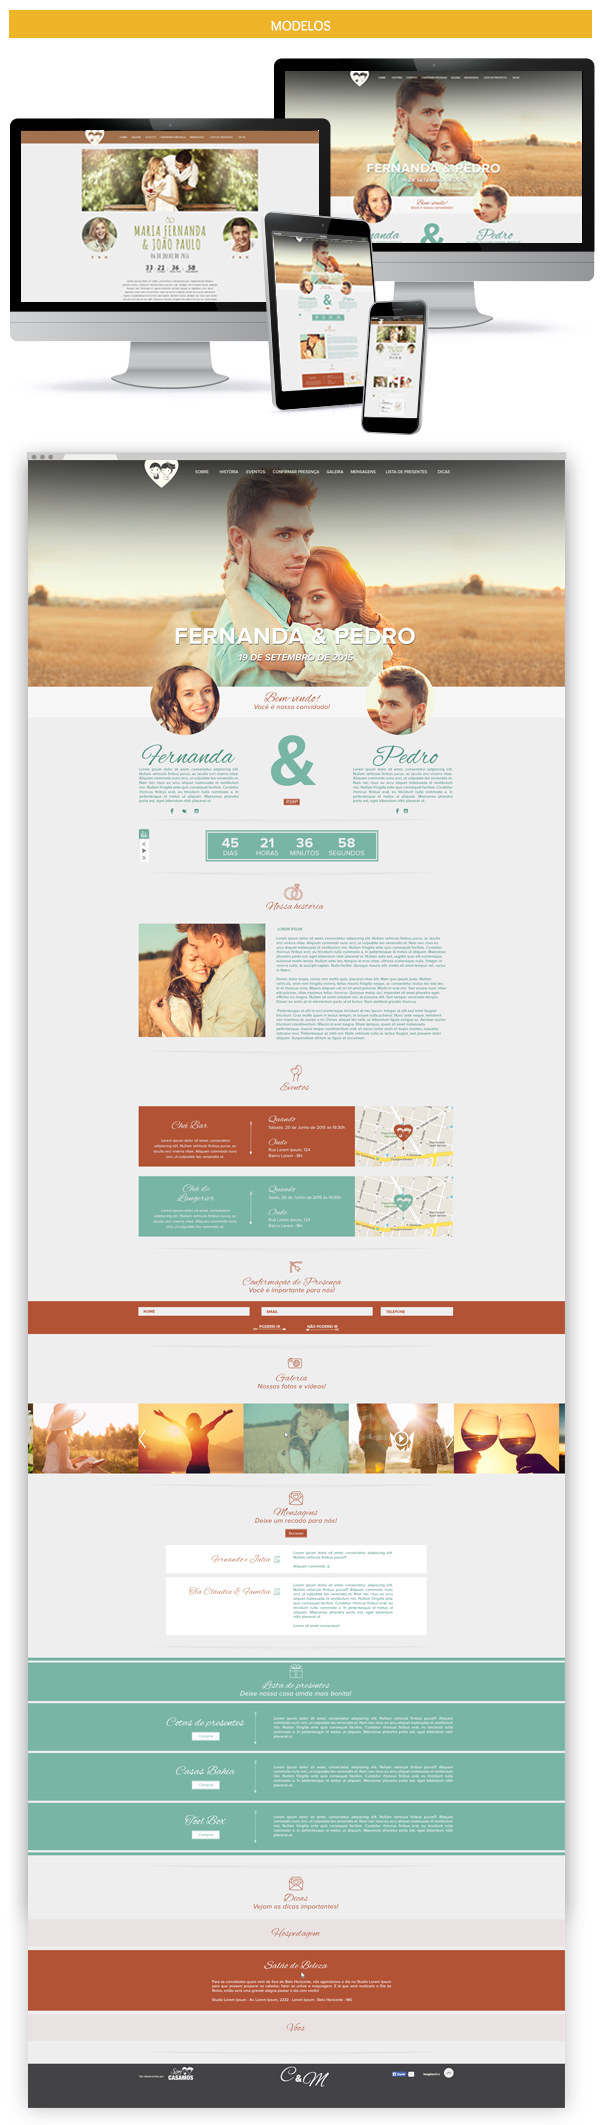 Webdesign site casamento